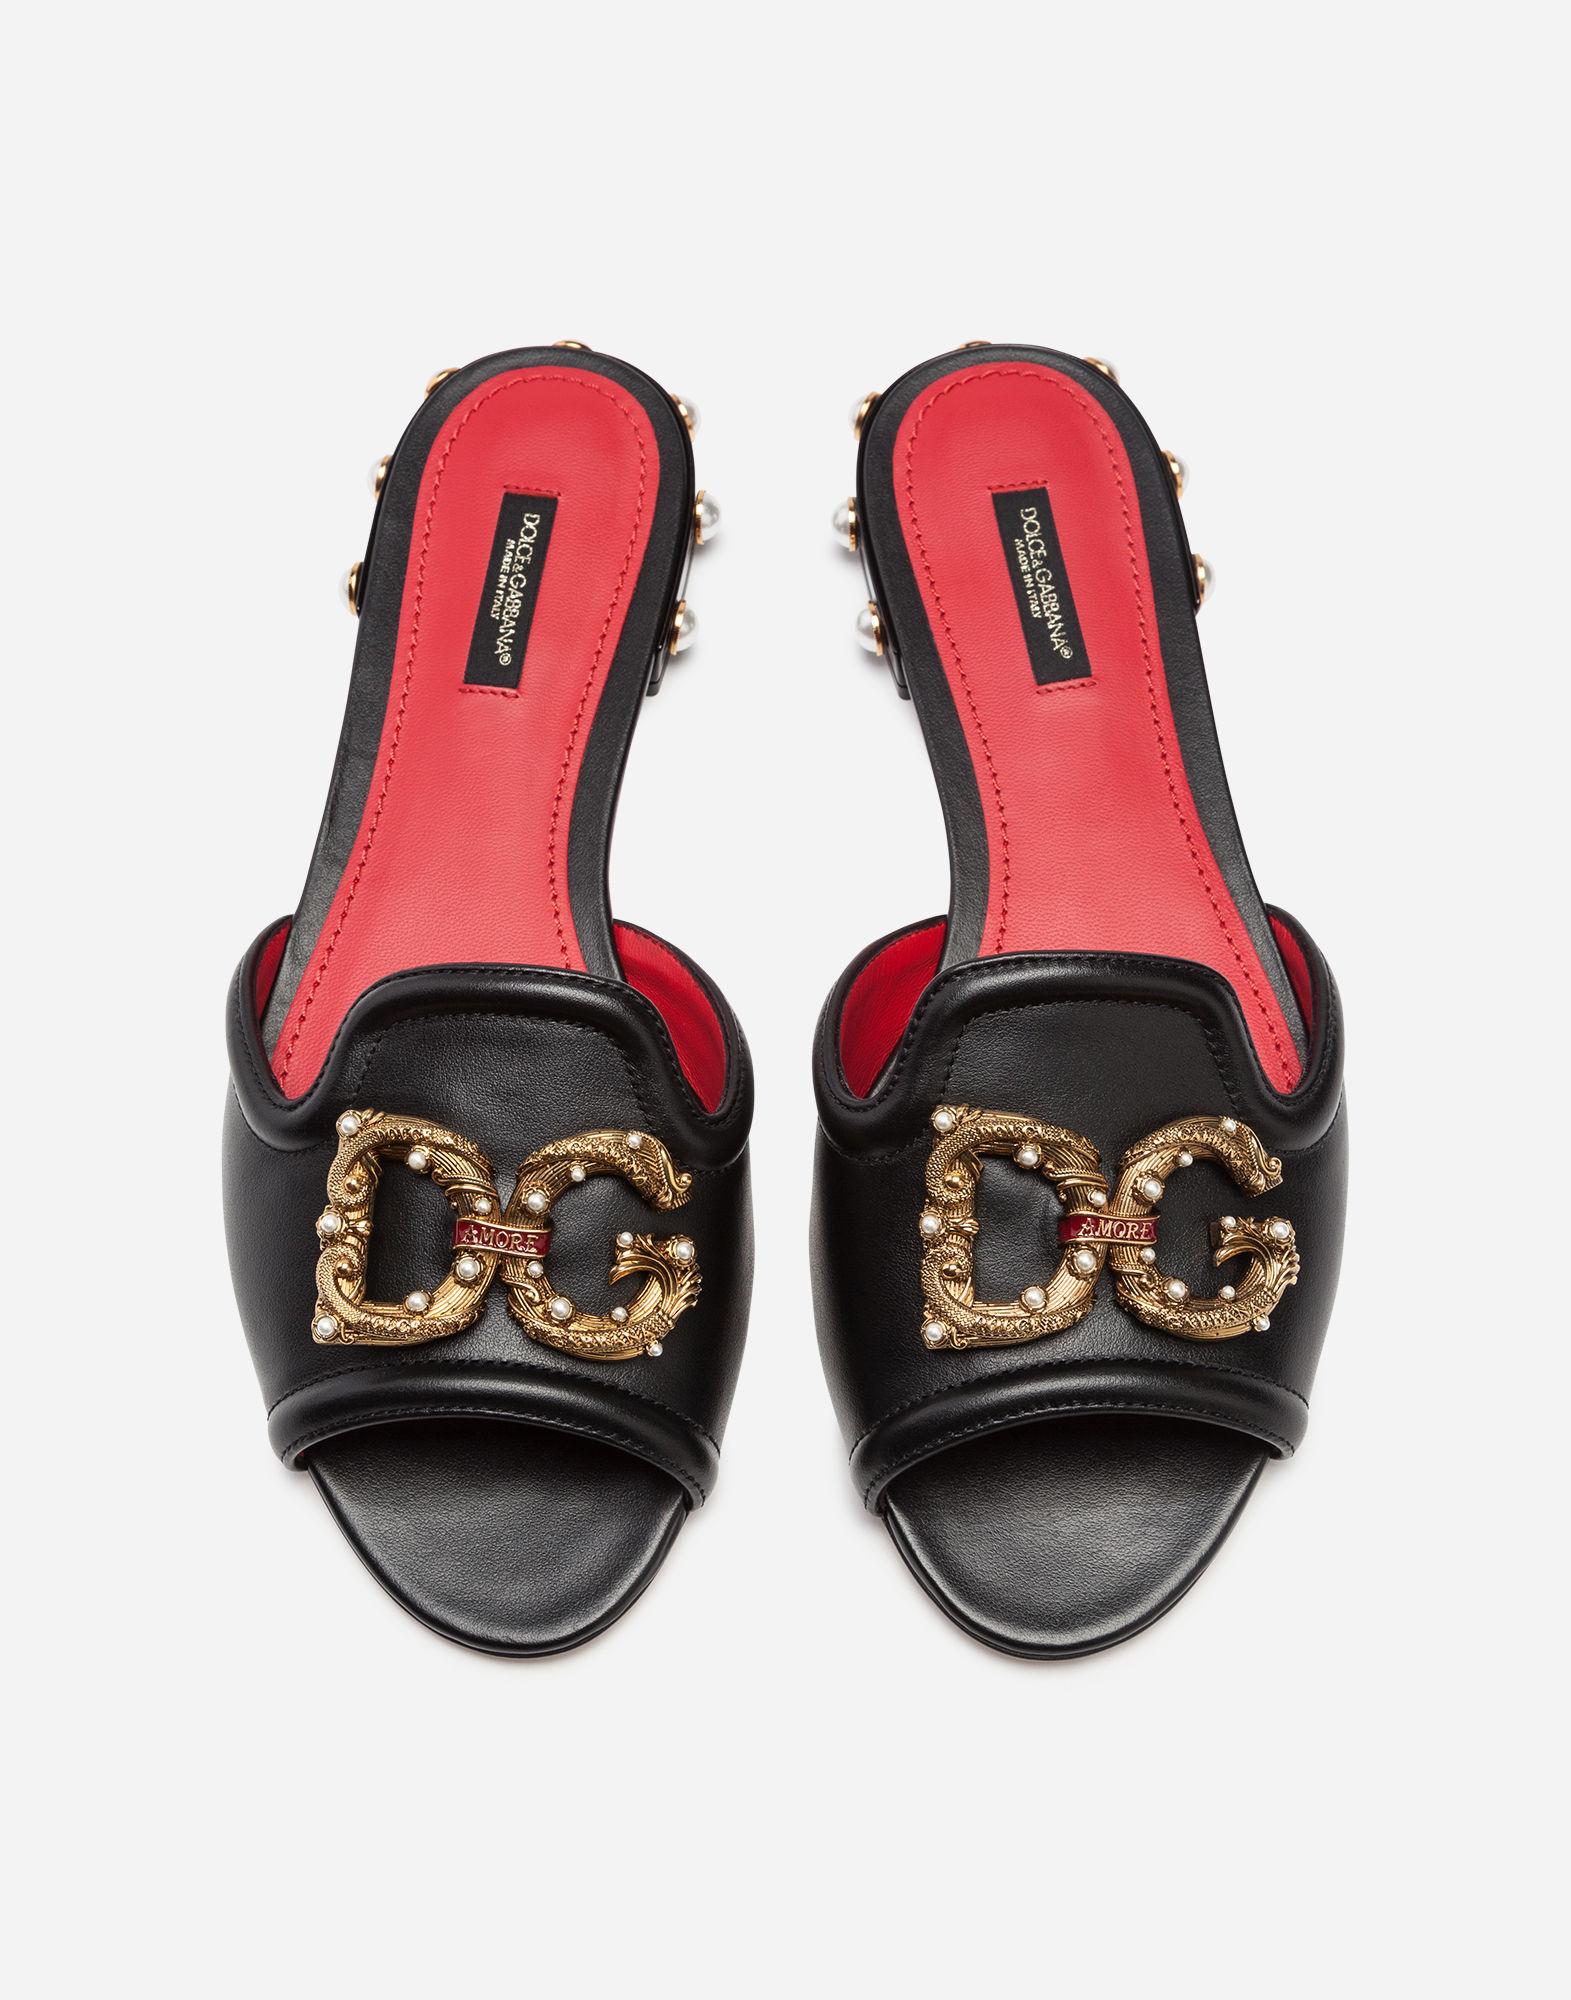 Dolce \u0026 Gabbana Leather Dg Amore Slides 